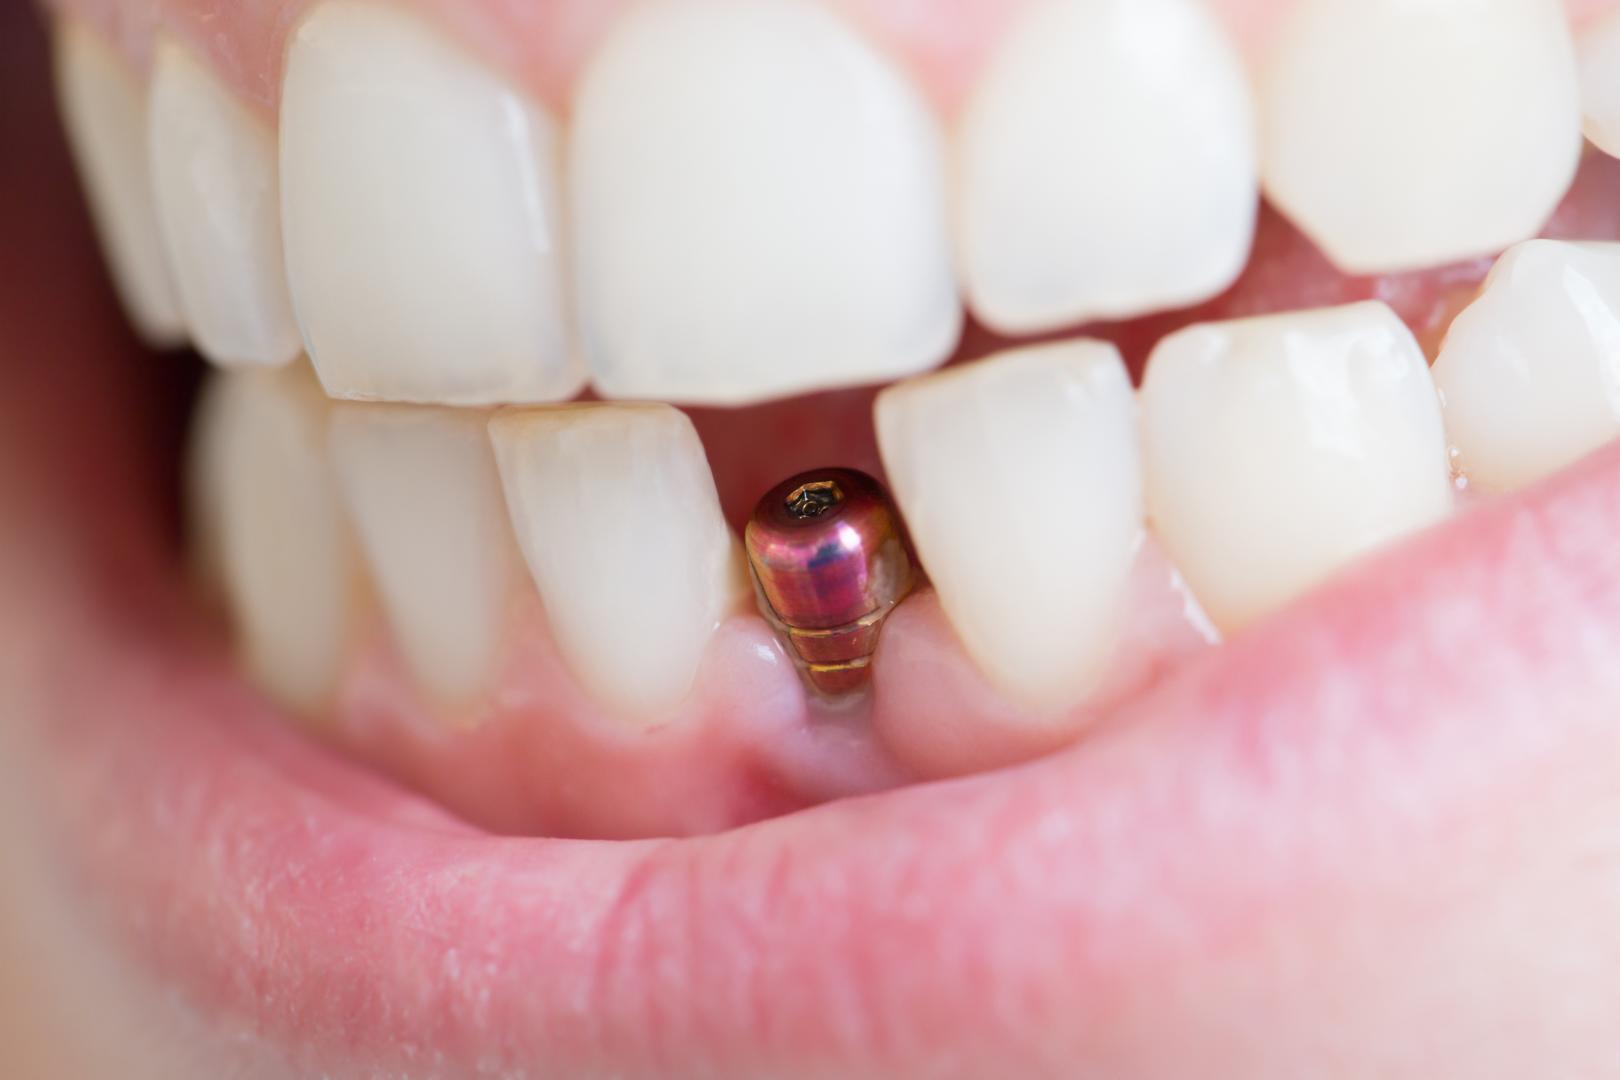 Implant dentaire : peut-on en poser plusieurs au même temps ?